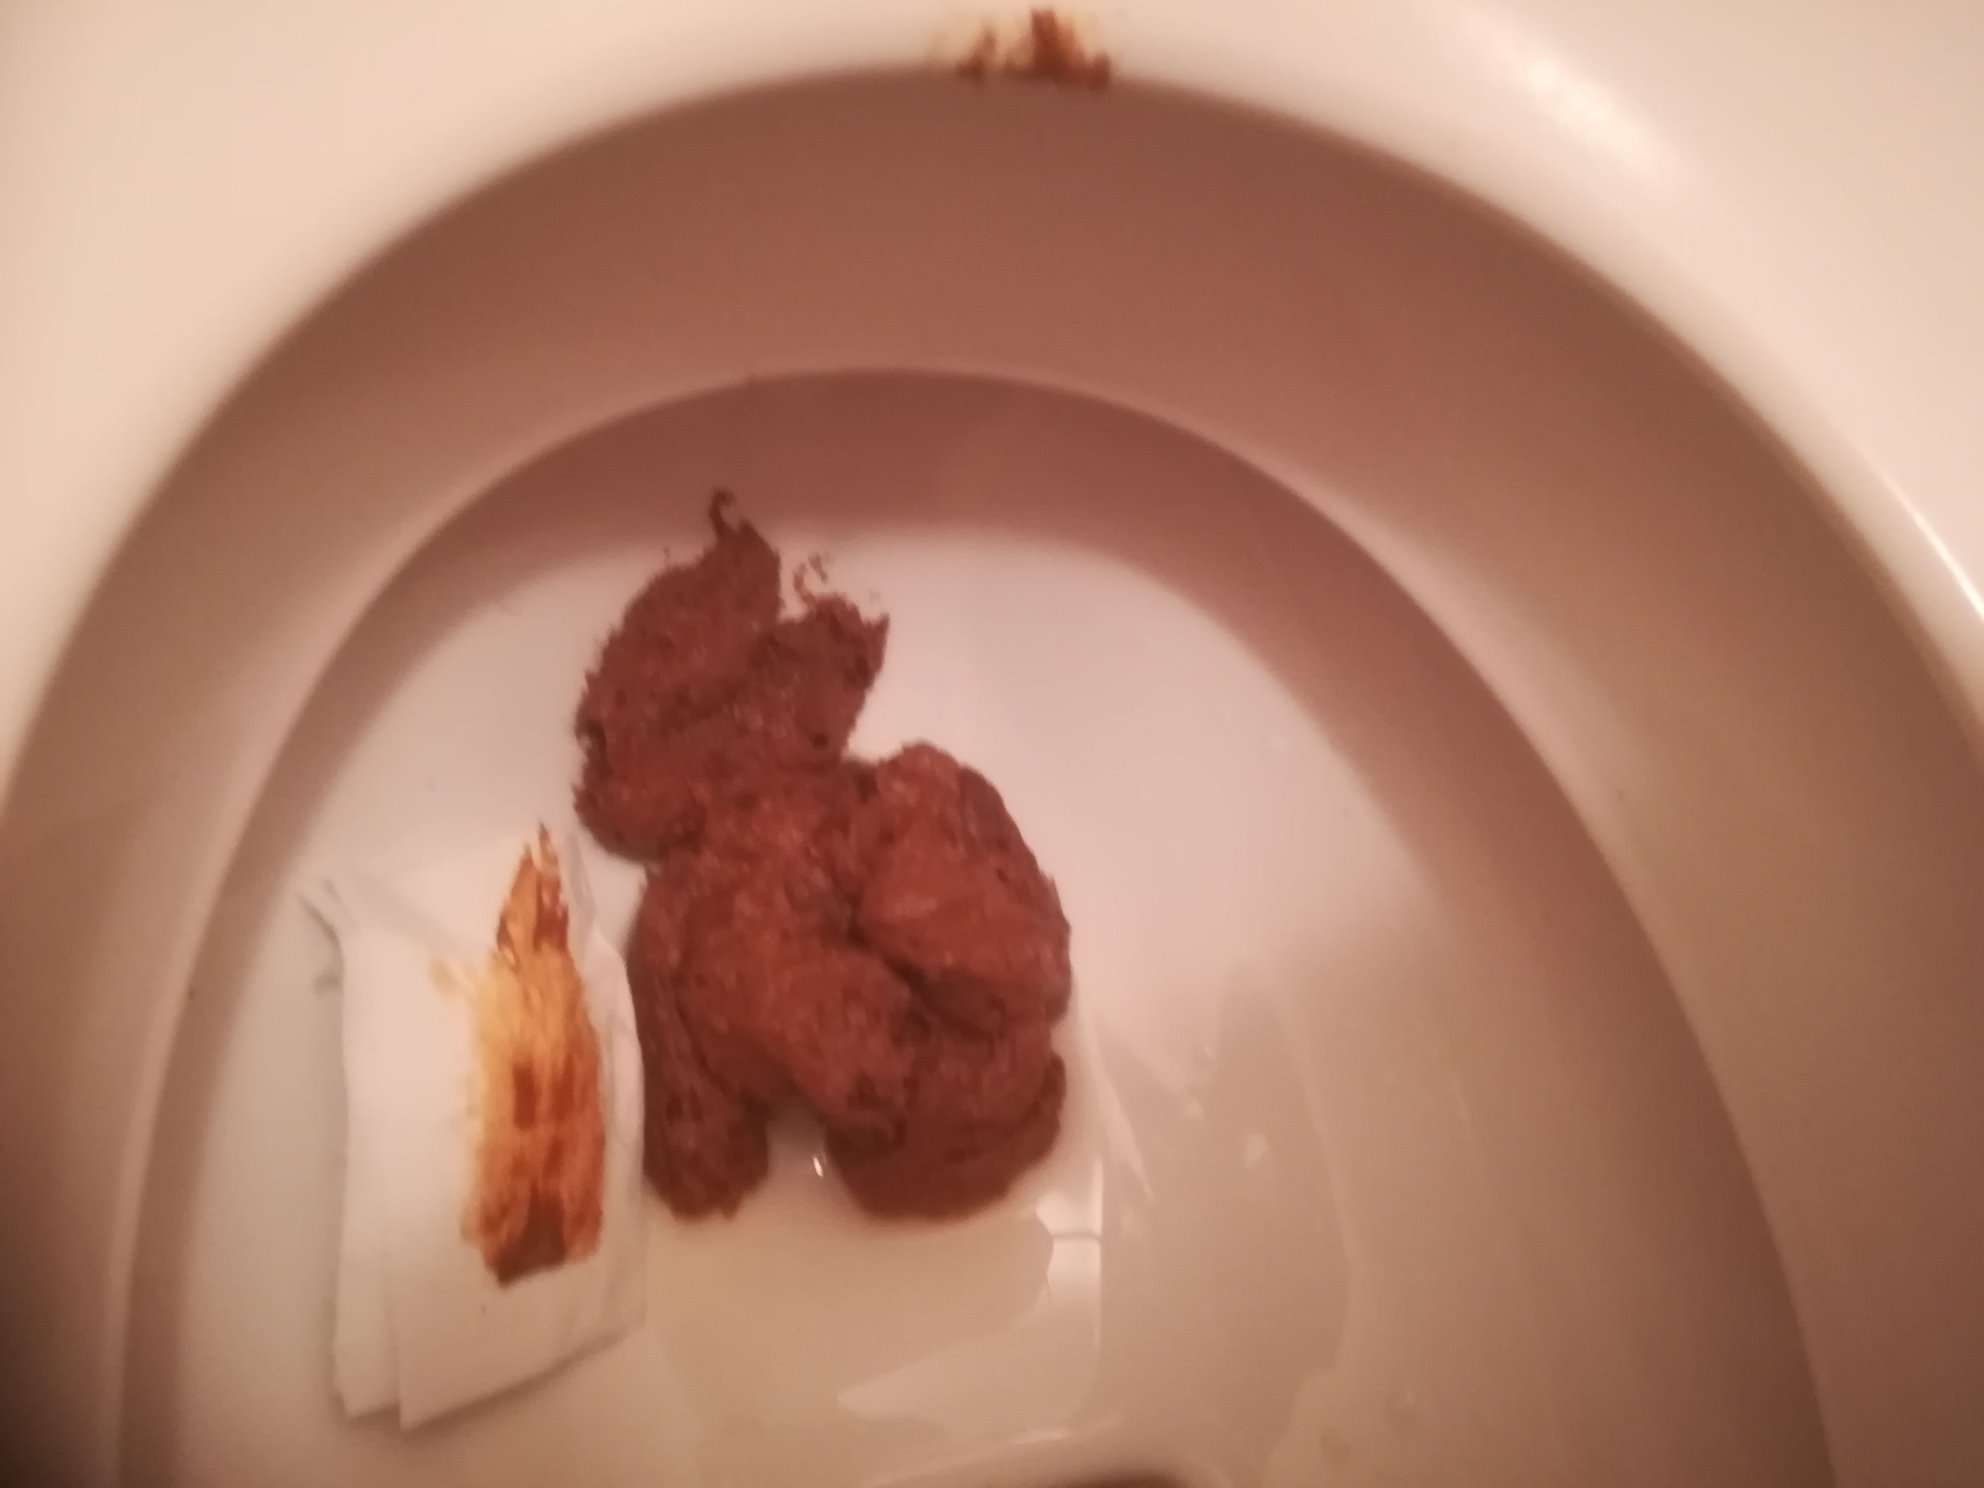 nice poop